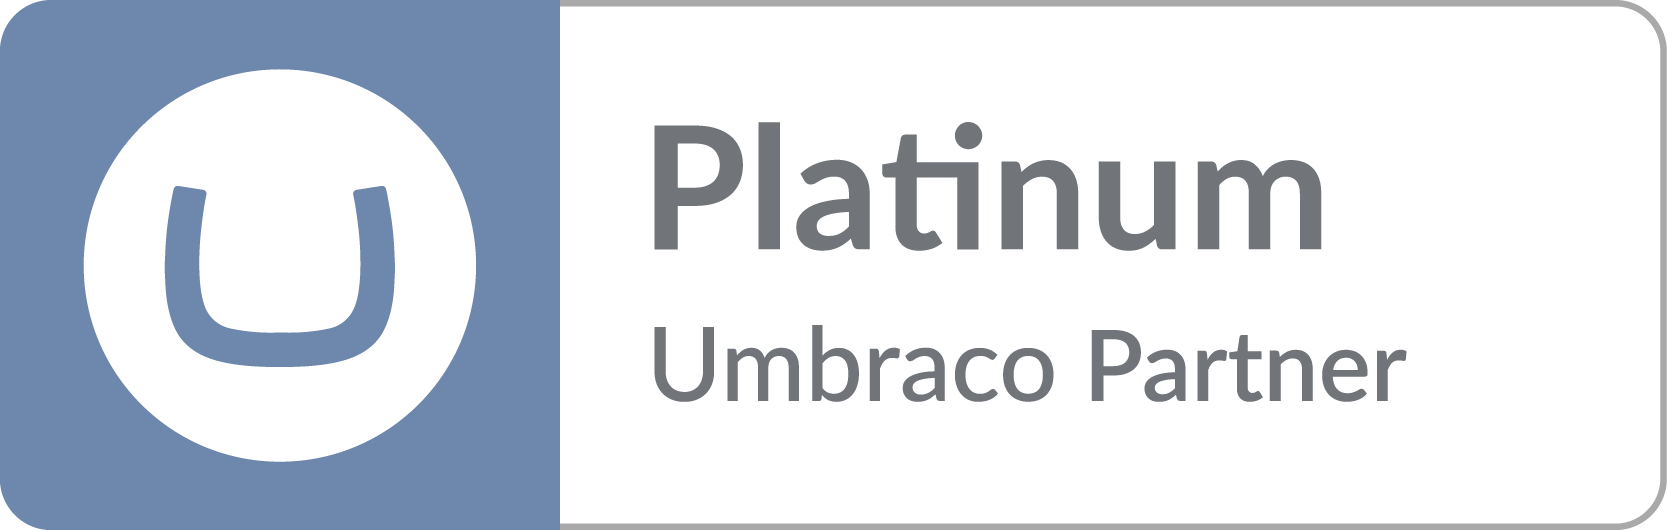 Umbraco Platinum Partner logo